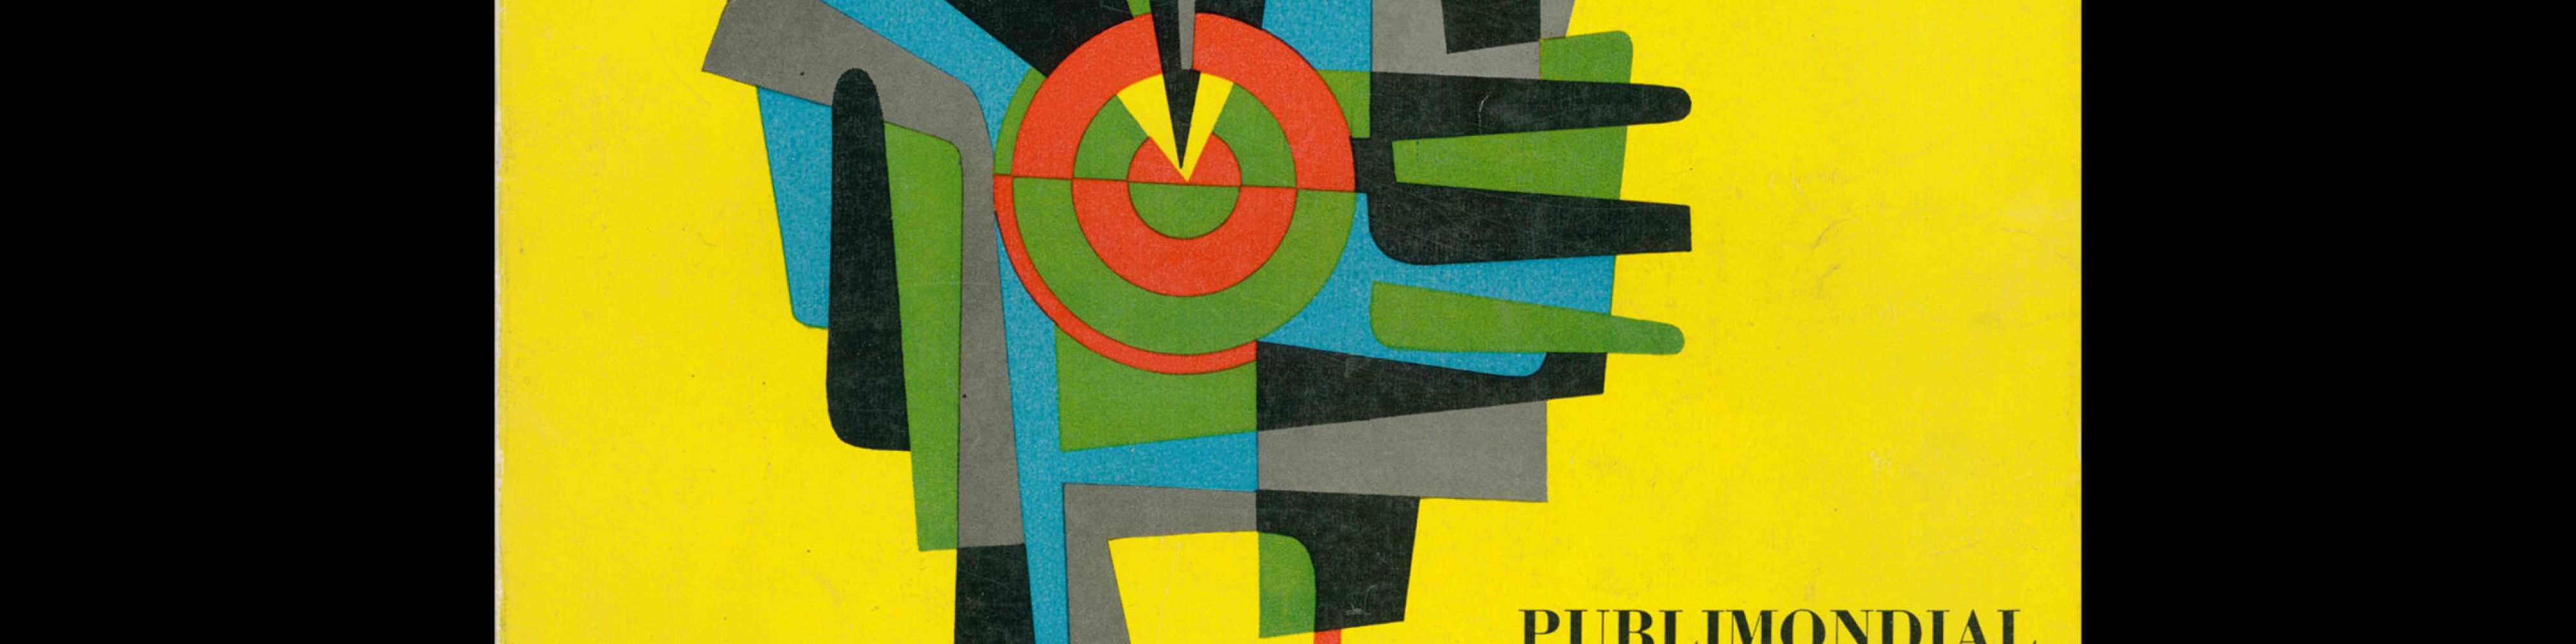 Publimondial 84, 1957. Cover design by Ricetti Bruno